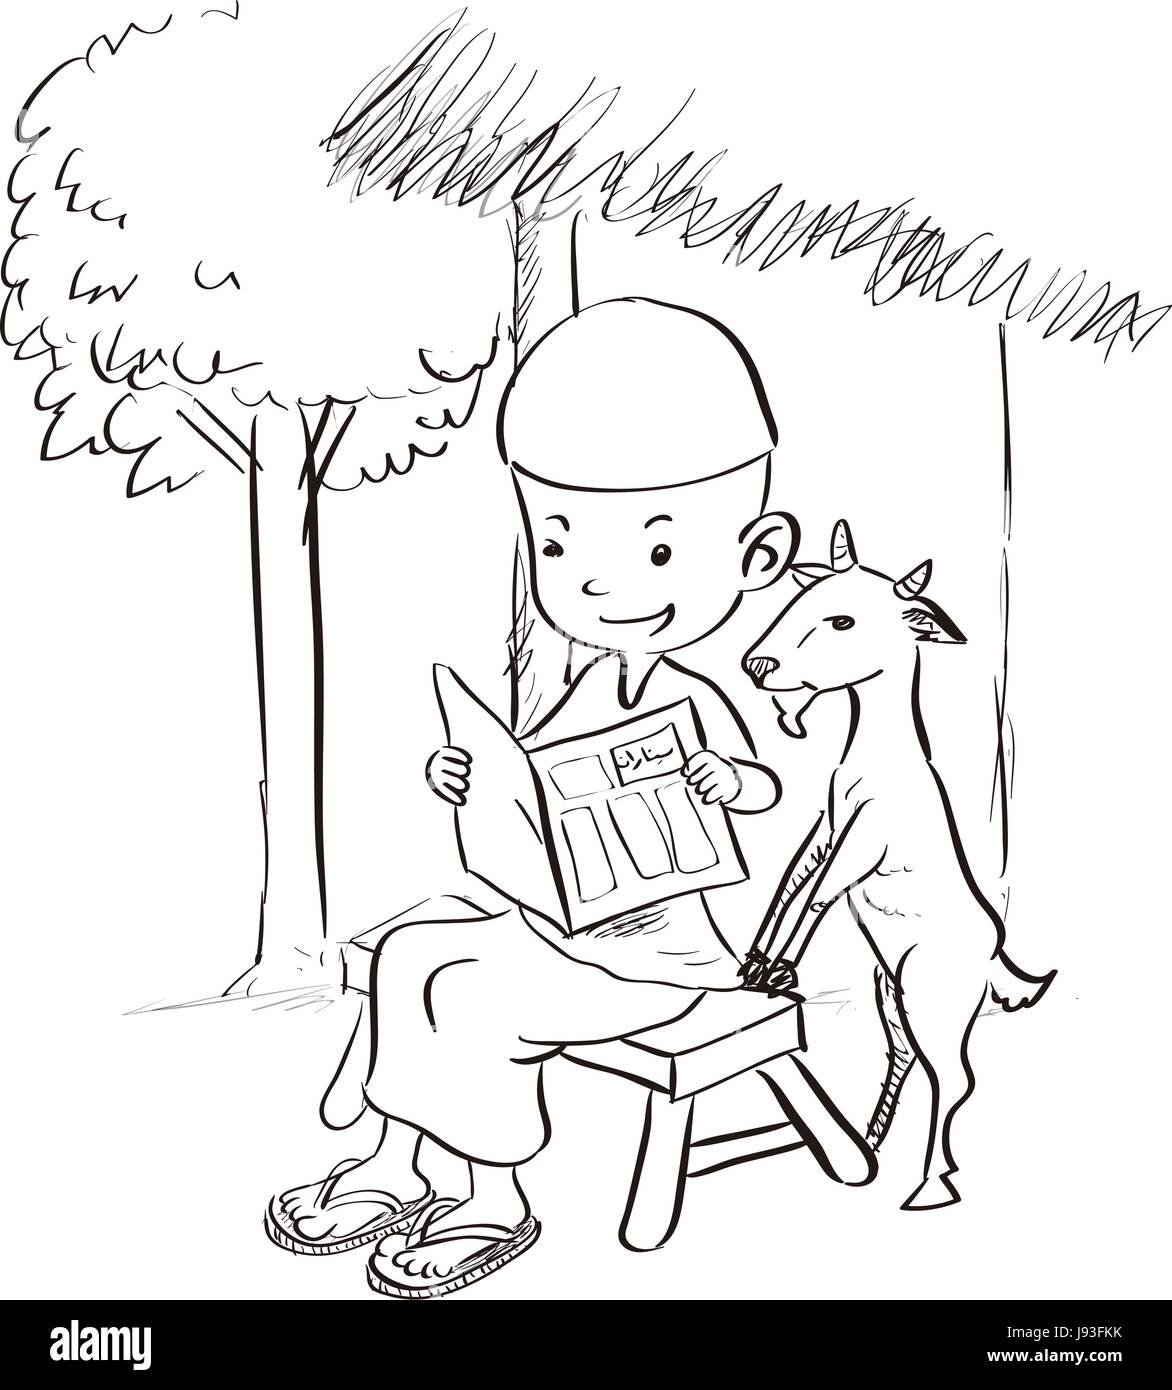 Niedlichen muslimischen jungen sitzen ein Buch mit einer Ziege. Handgezeichnete Cartoon-Skizze-Vektor-illustration Stock Vektor